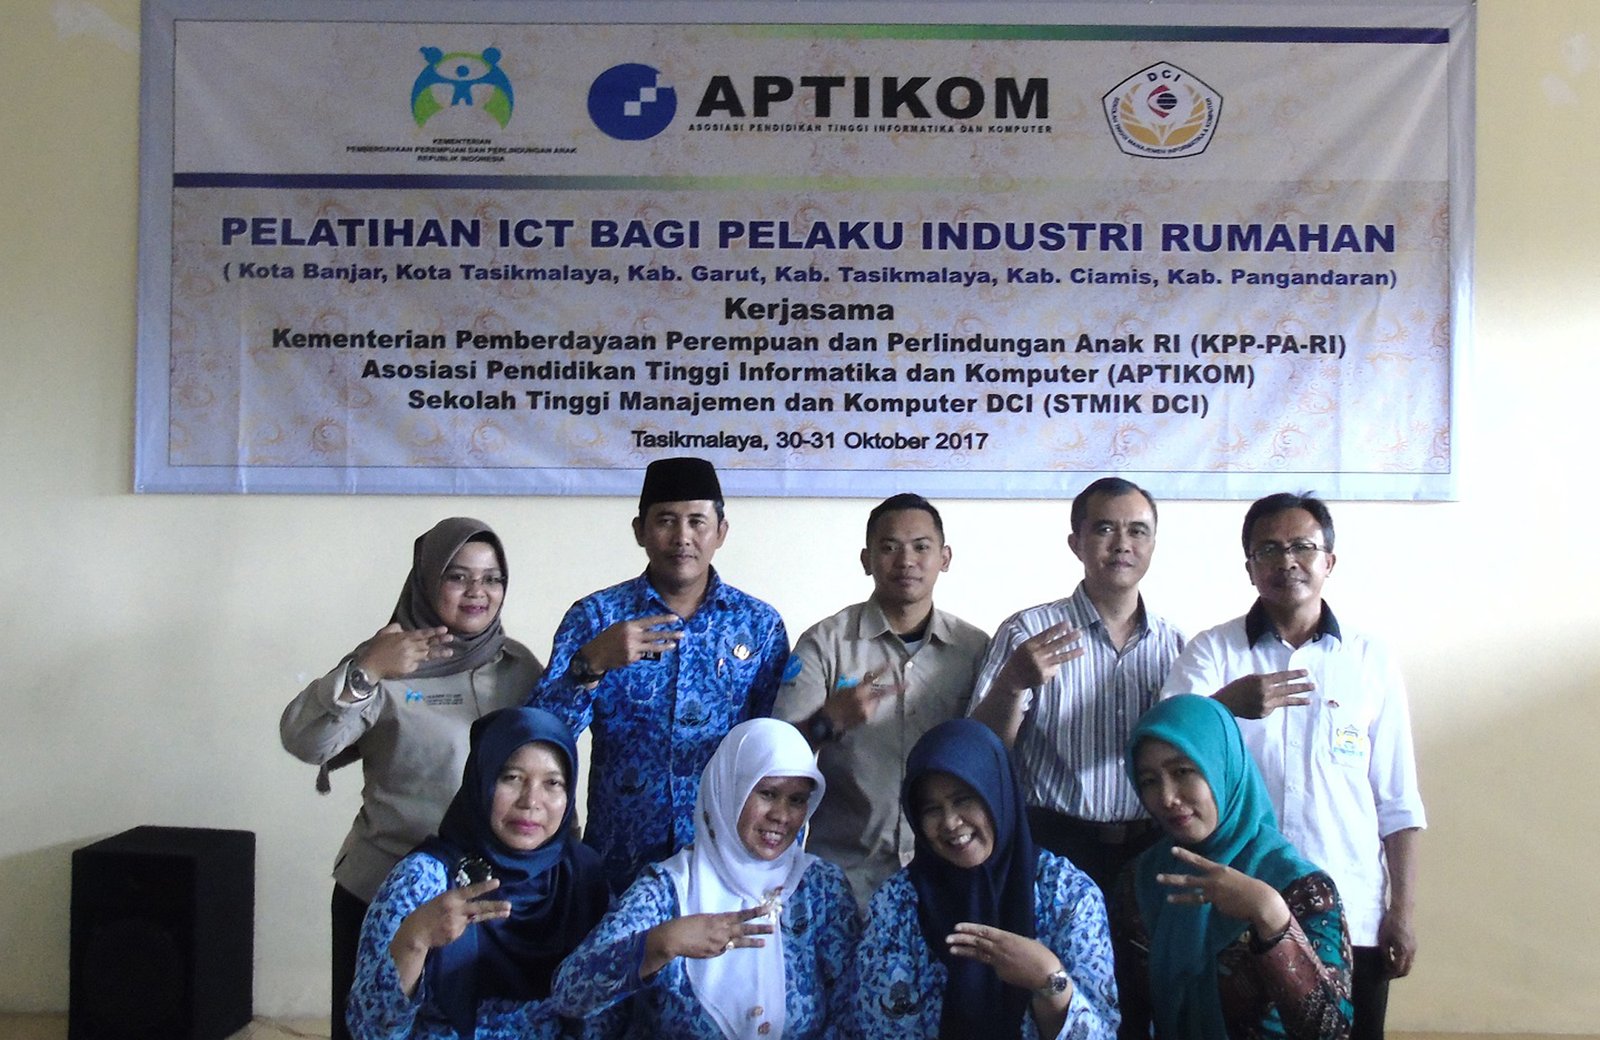 Pelatihan Pemanfaatan ICT untuk Industri Rumahan Kerjasama Kementrian PPA dan Aptikom